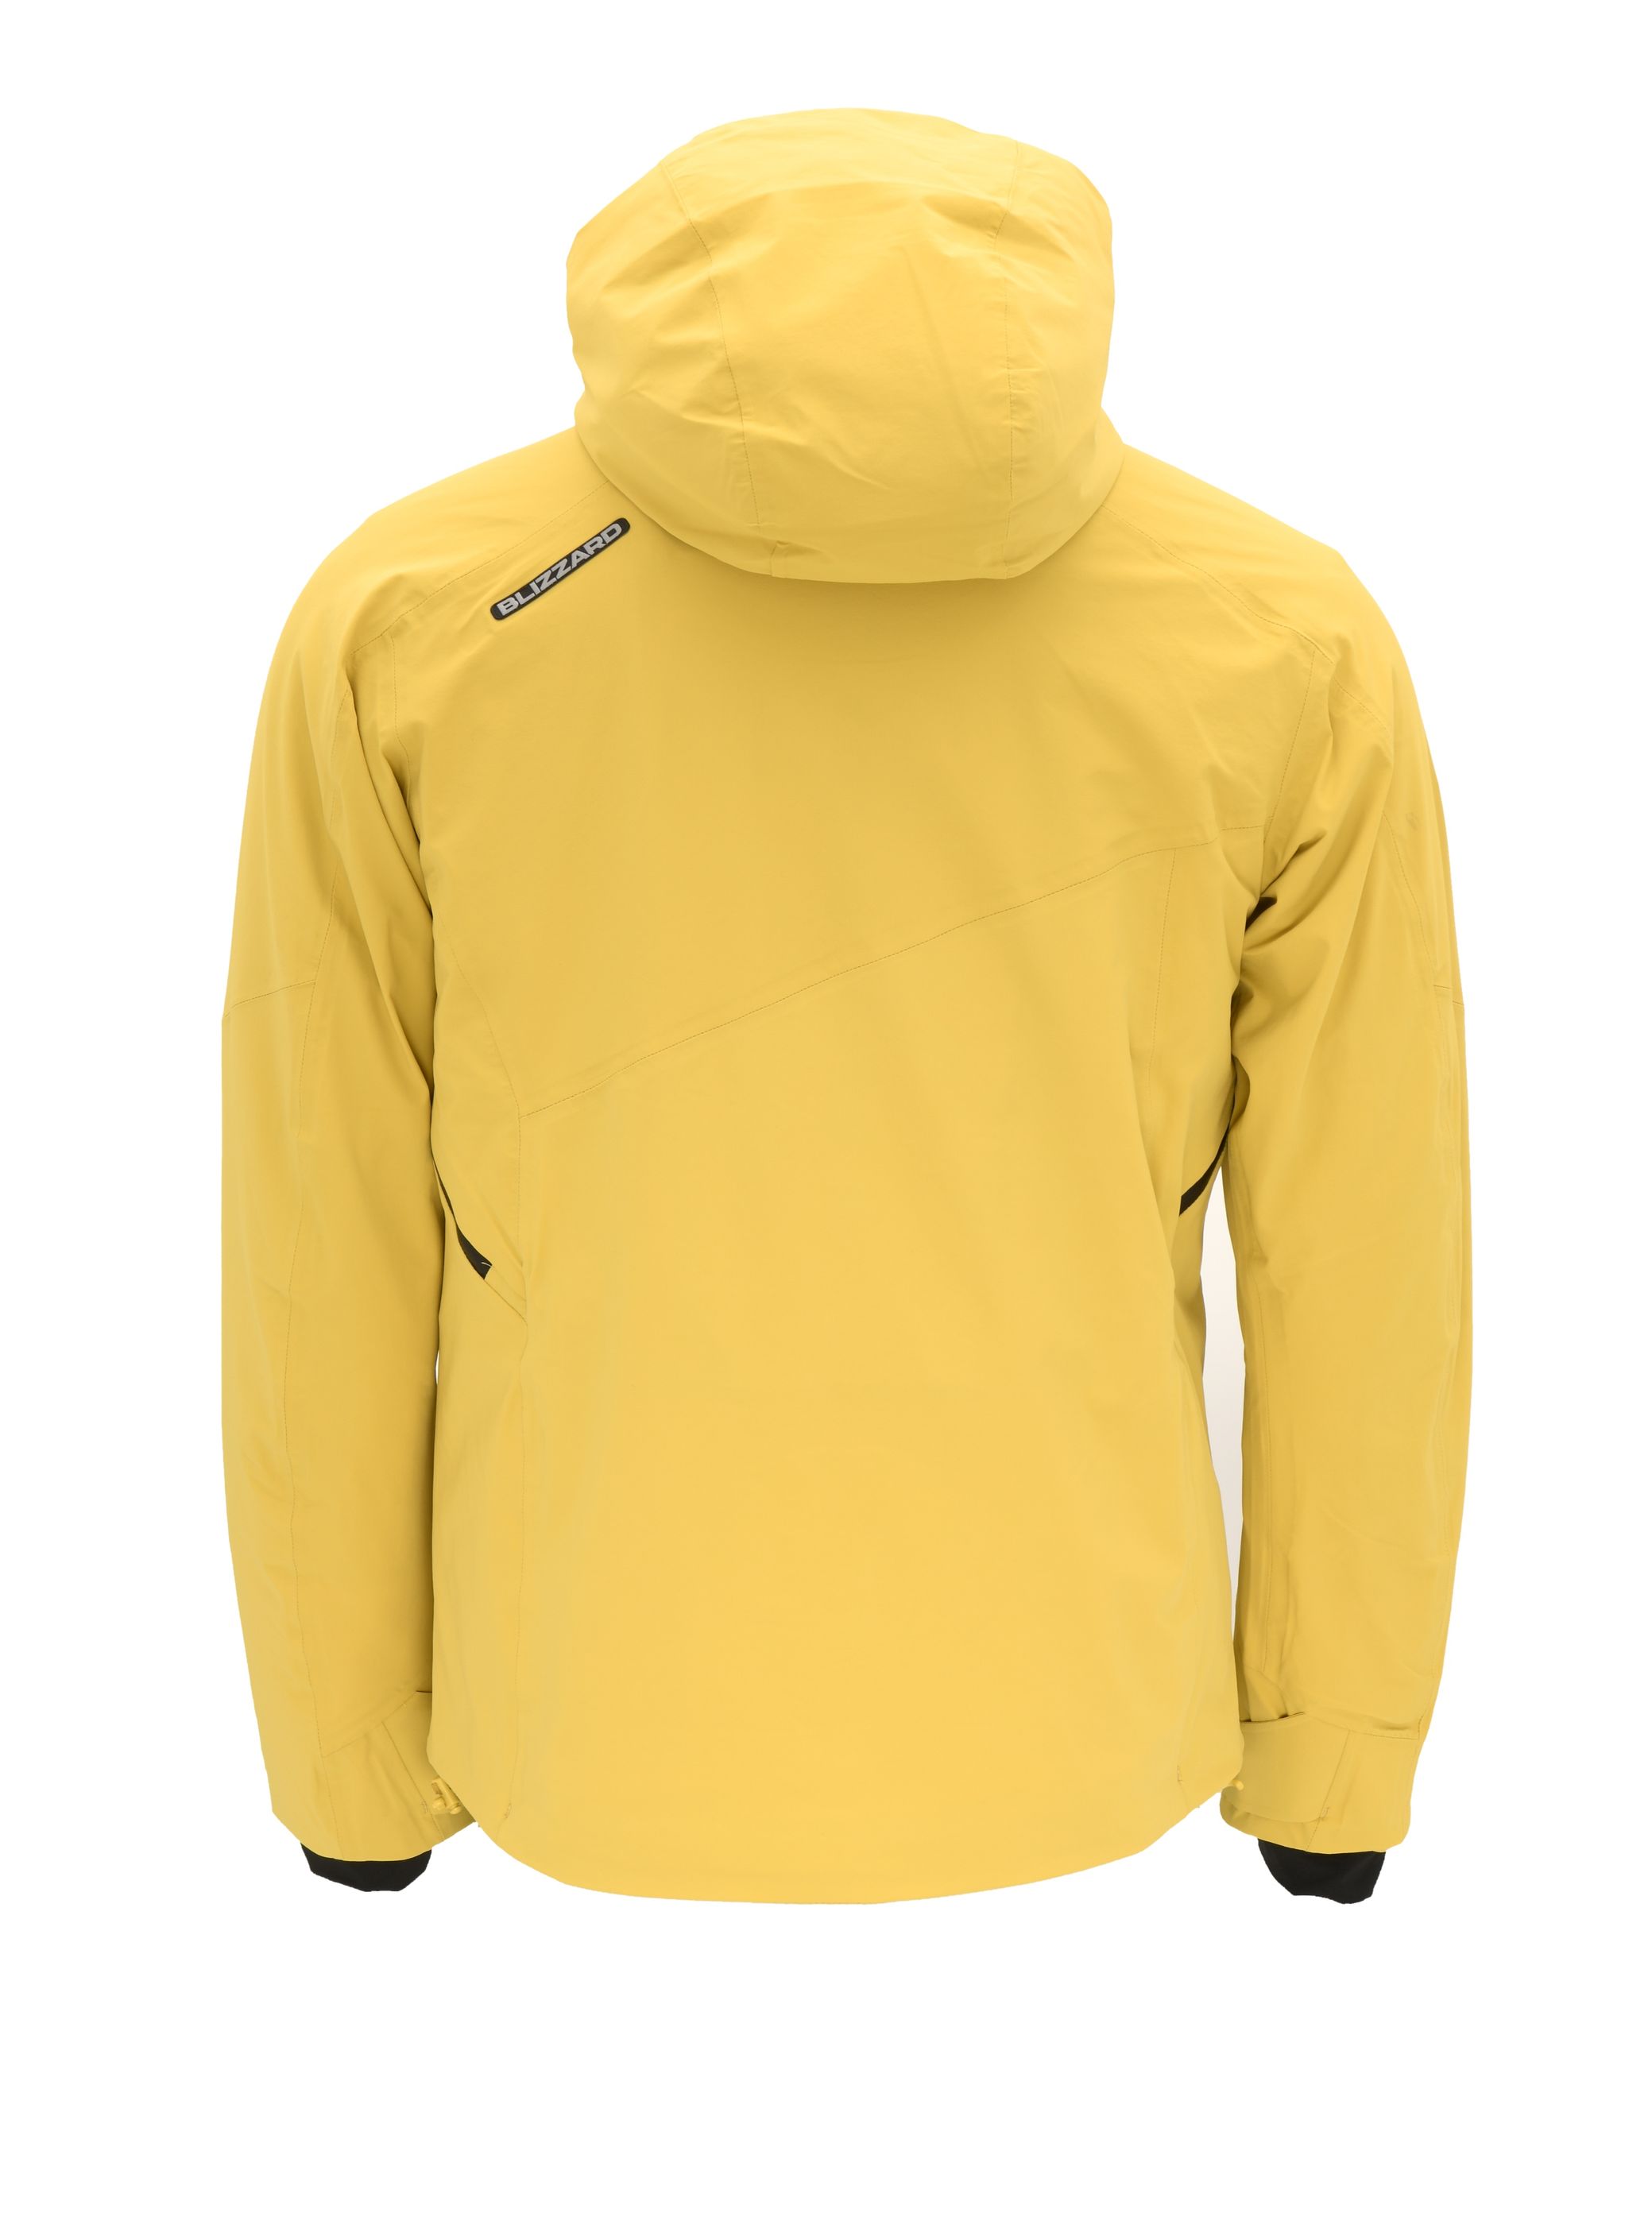 W2W Ski Jacket Veneto, mustard yellow